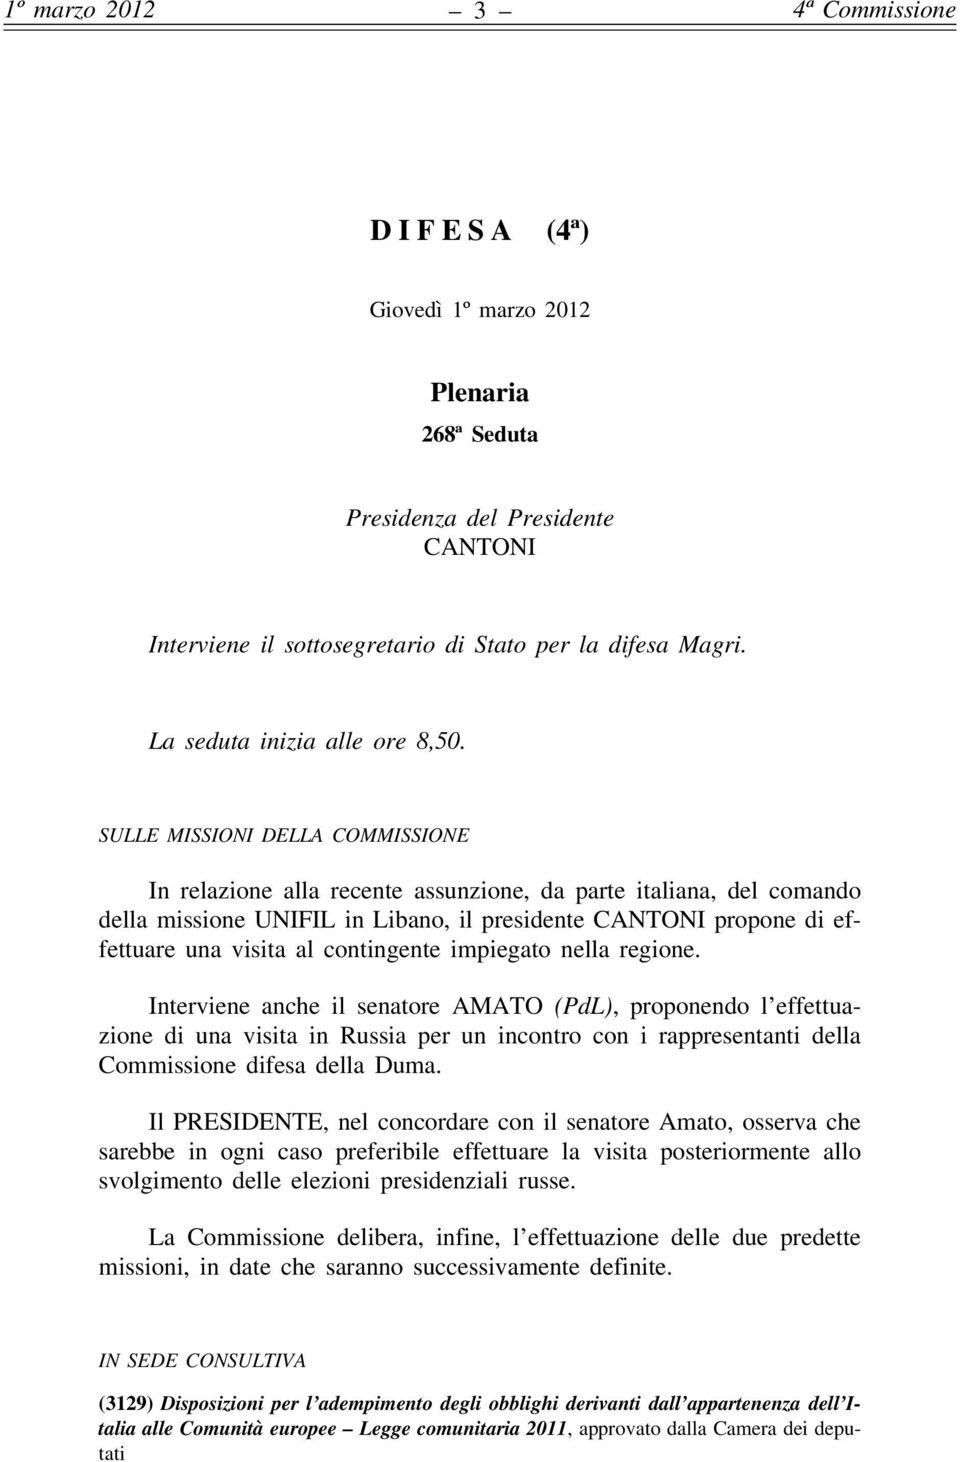 SULLE MISSIONI DELLA COMMISSIONE In relazione alla recente assunzione, da parte italiana, del comando della missione UNIFIL in Libano, il presidente CANTONI propone di effettuare una visita al